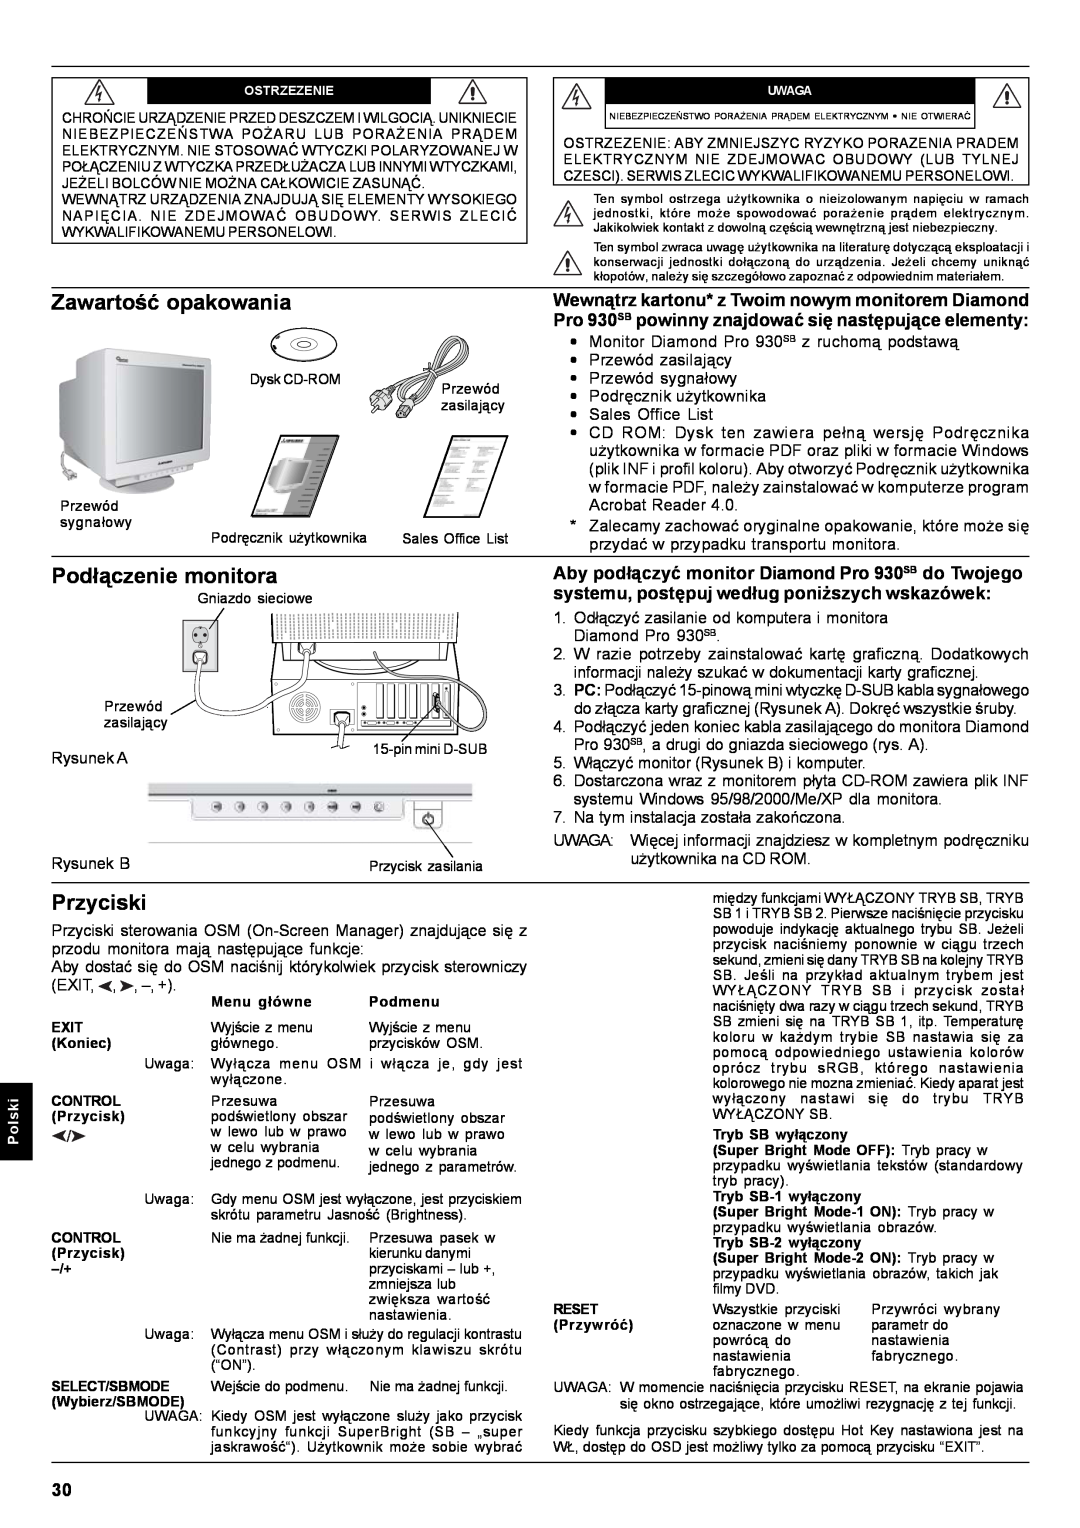 Mitsubishi Electronics Pro 930SB user manual Zawartość opakowania, Podłączenie monitora, Przyciski 